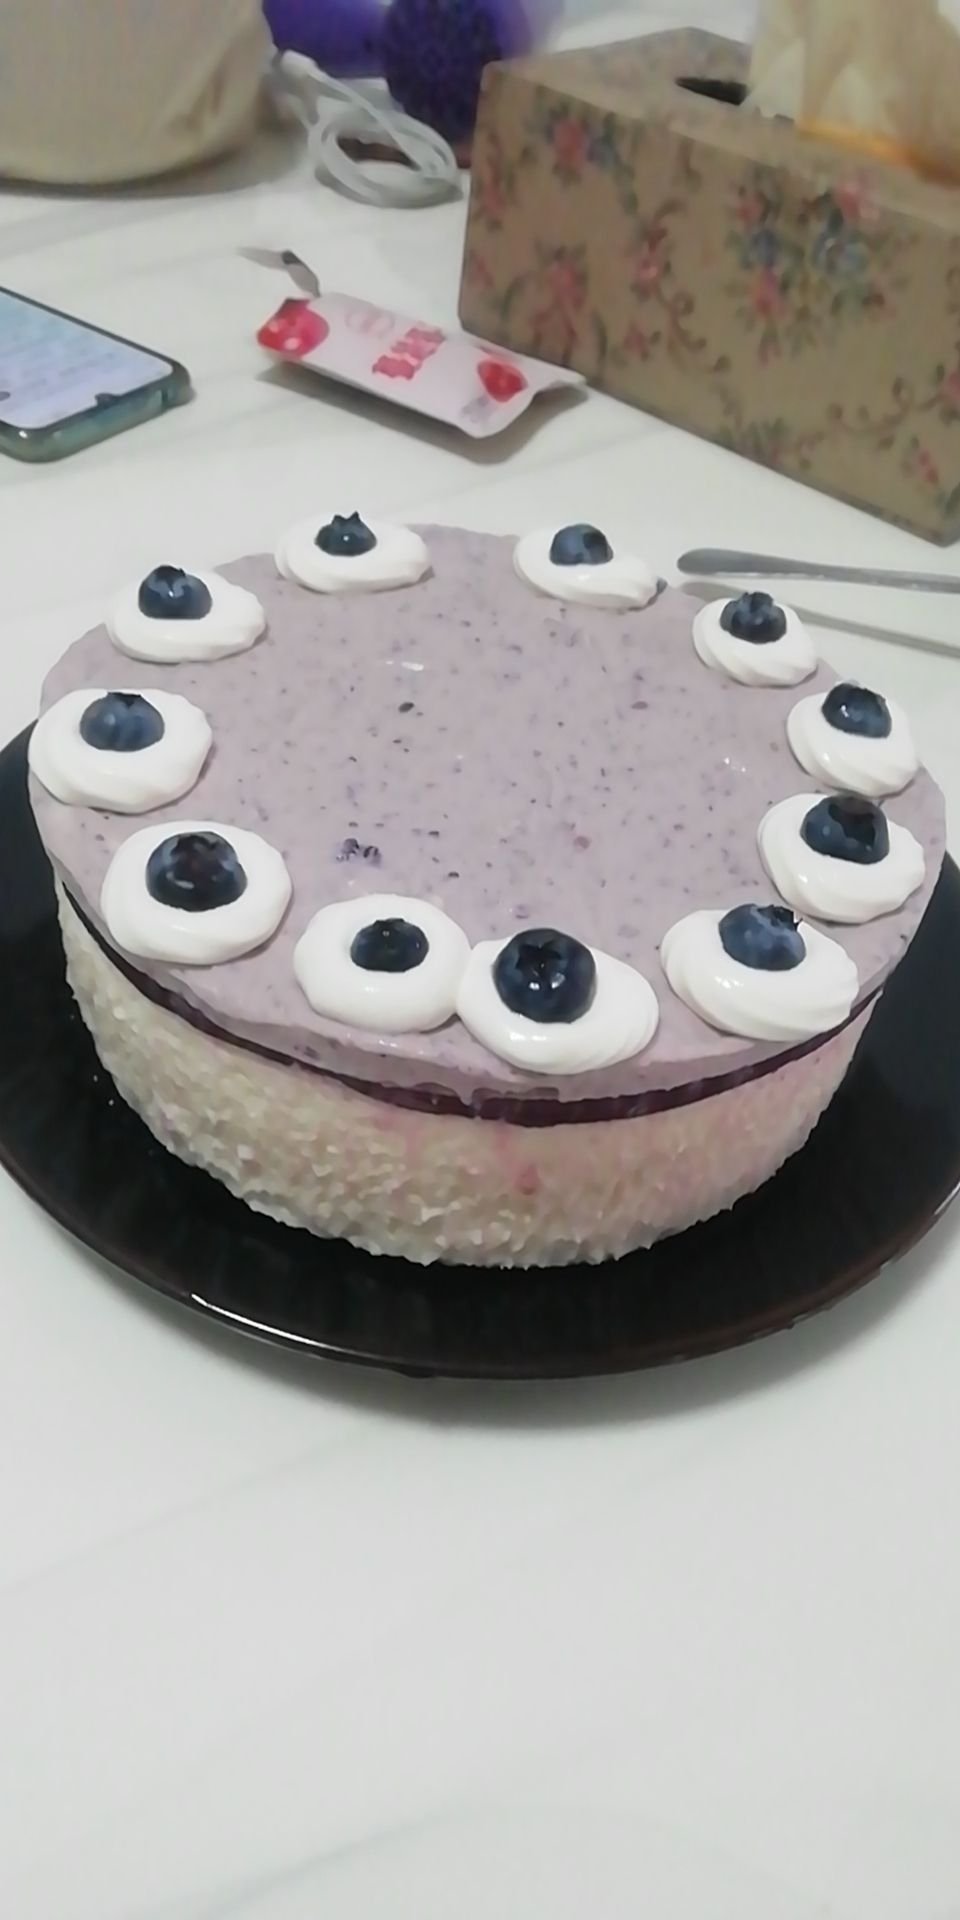 【搬运】Cookingtree蓝莓芝士蛋糕